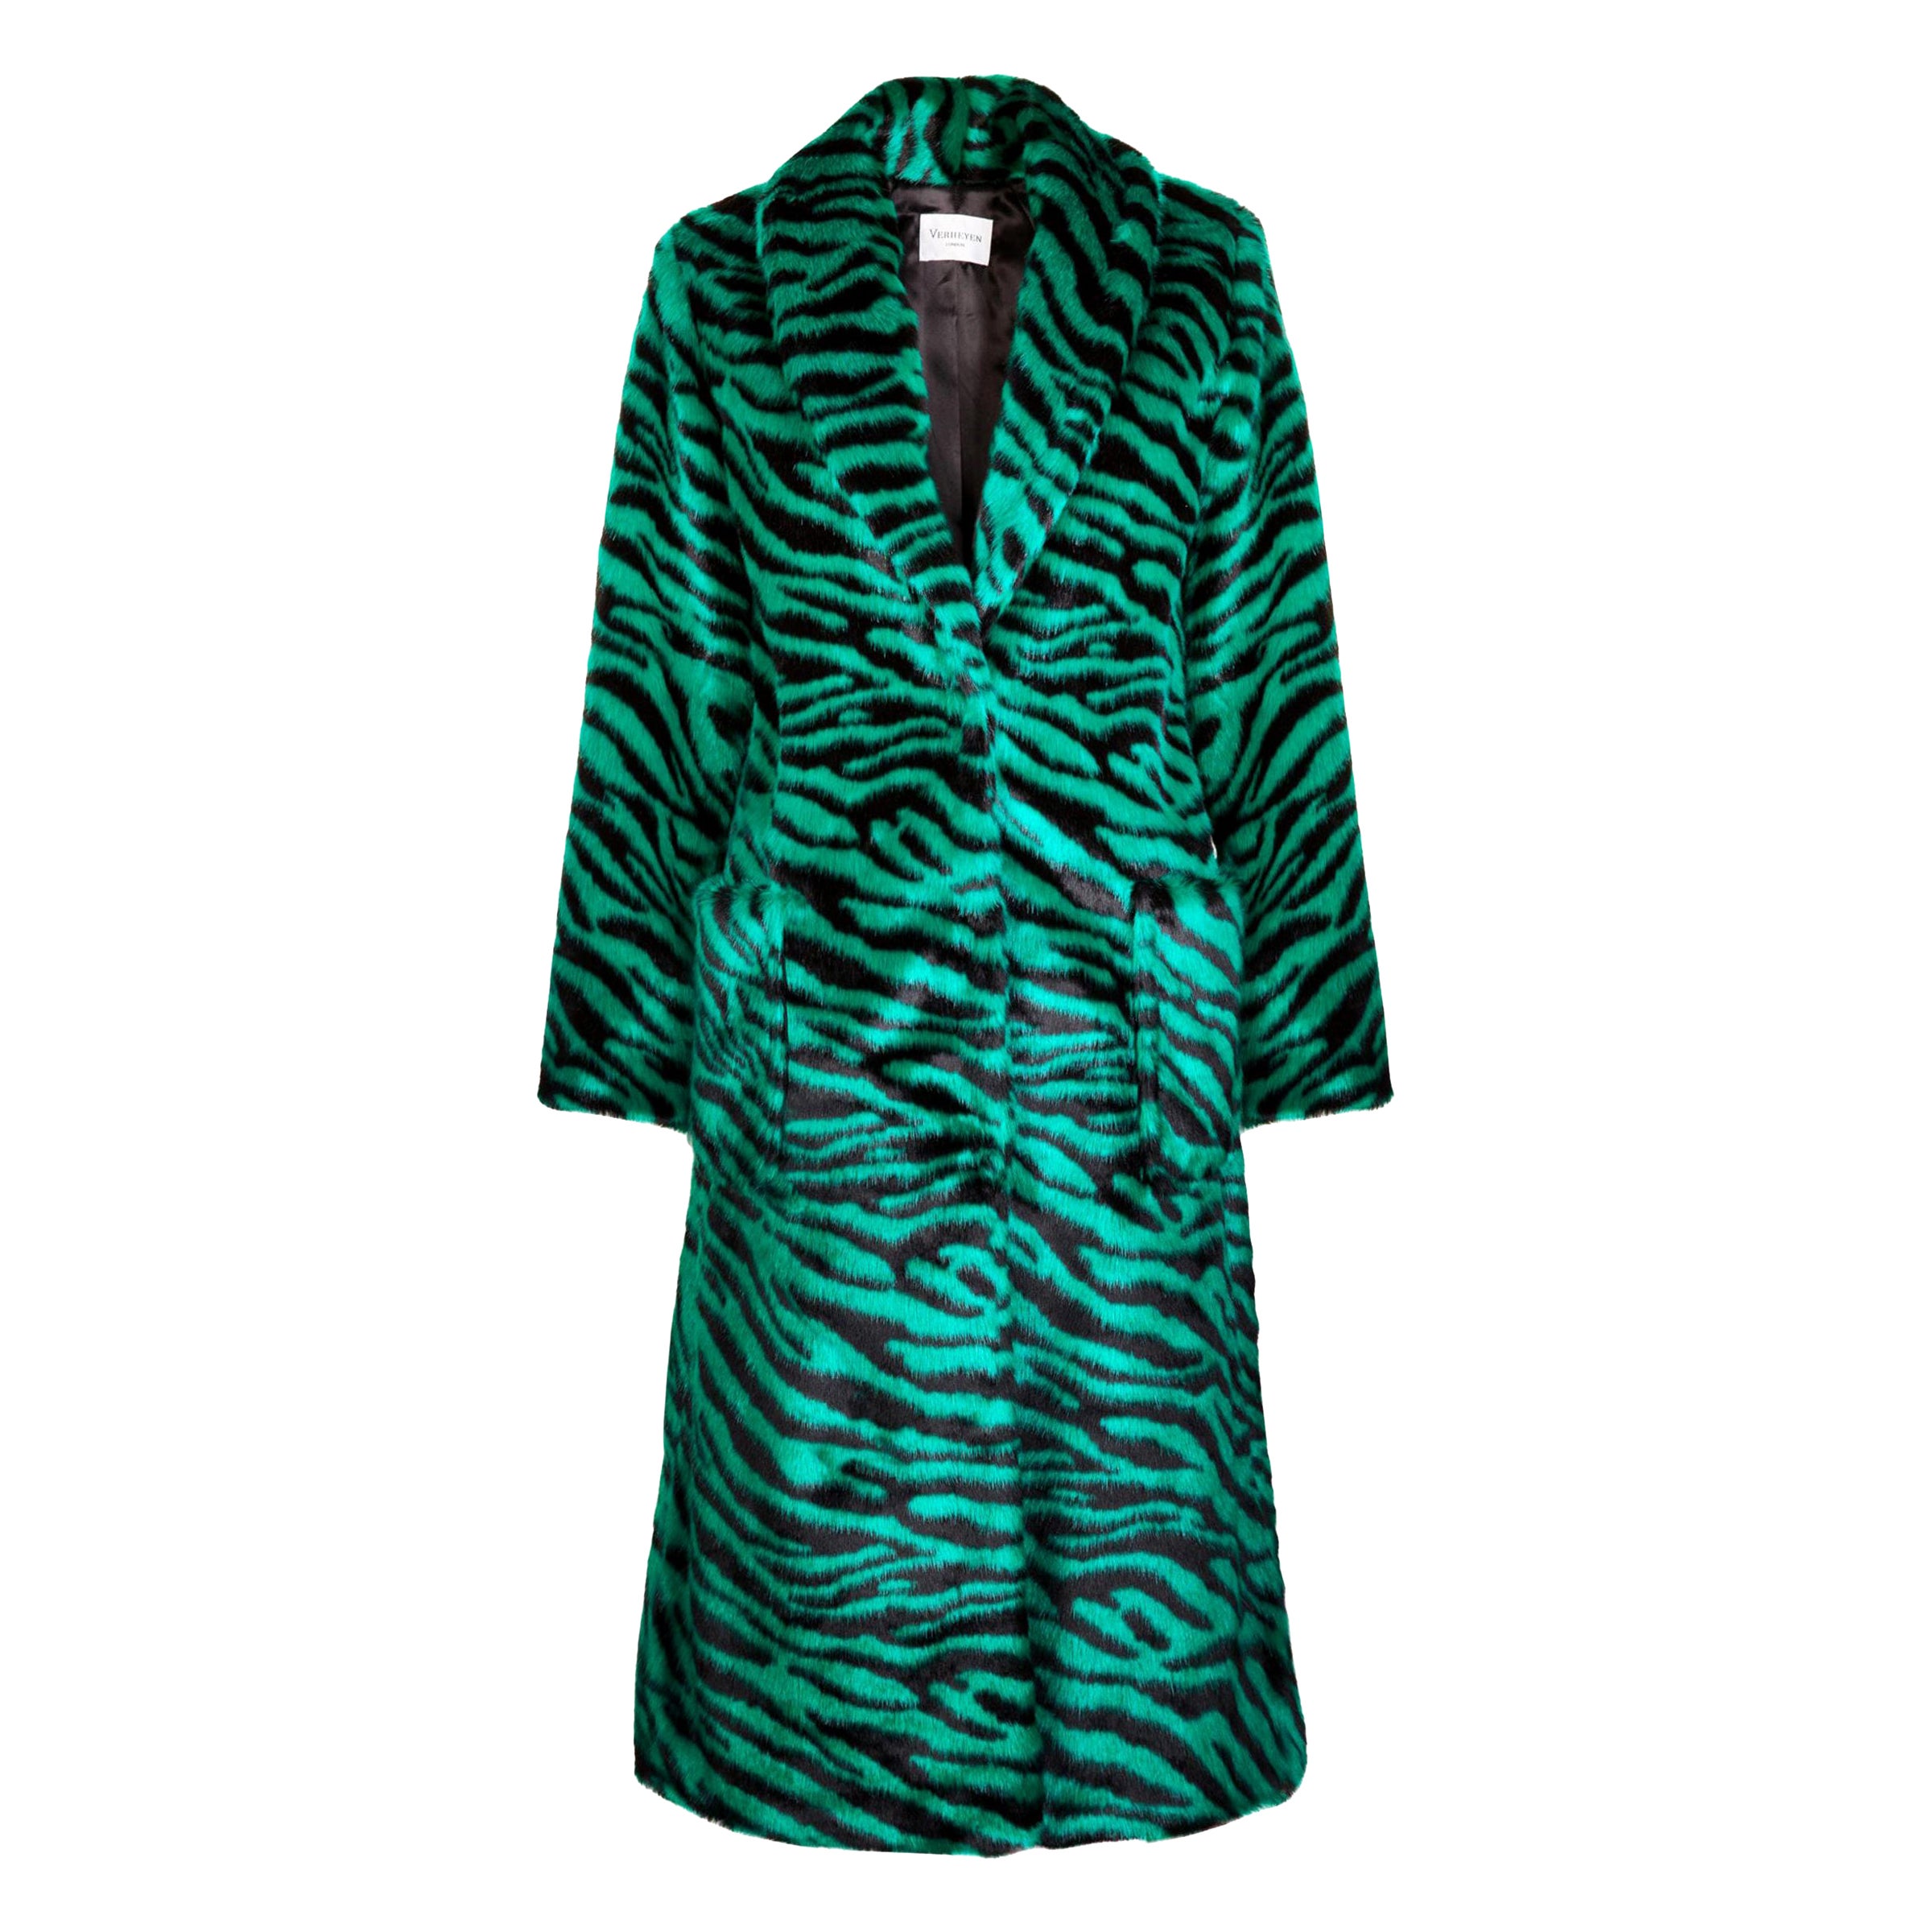 Verheyen London Esmeralda Faux Fur Coat in Emerald Green Zebra Print size uk 12 For Sale